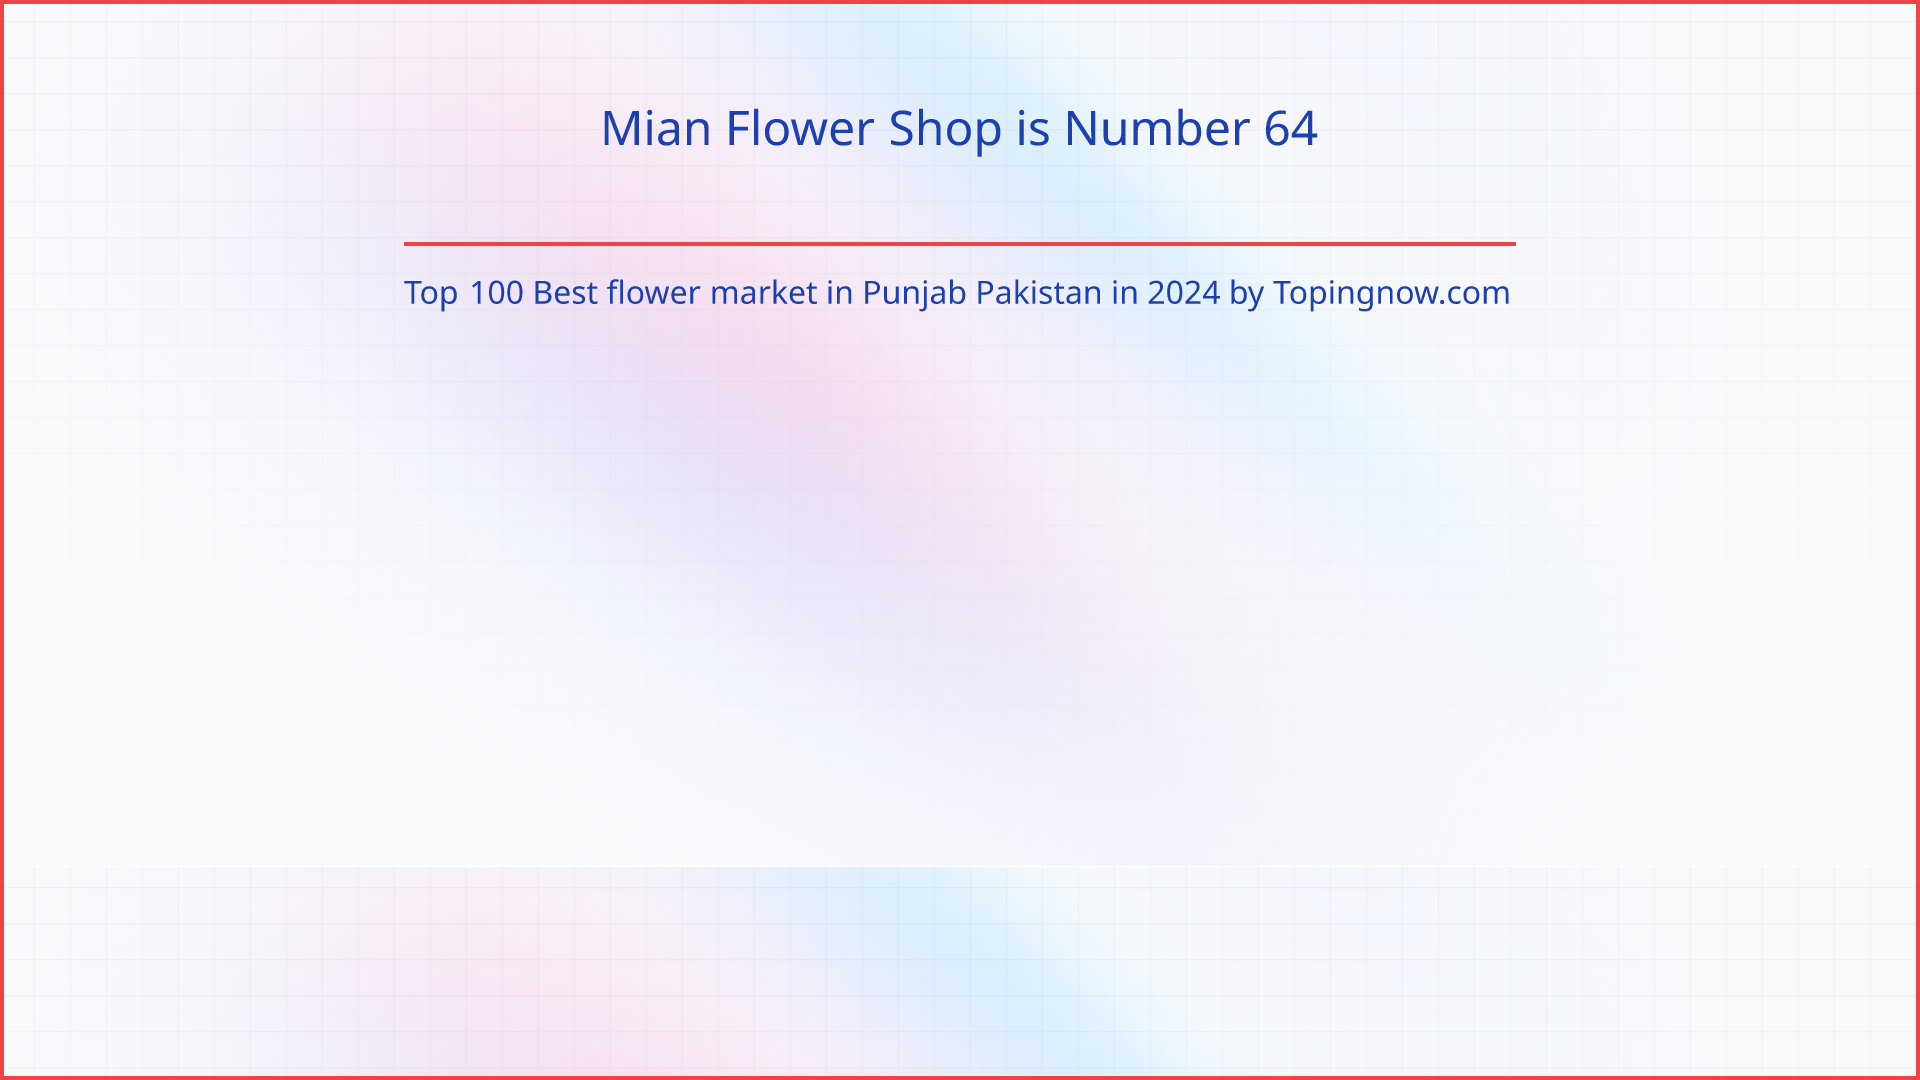 Mian Flower Shop: Top 100 Best flower market in Punjab Pakistan in 2024